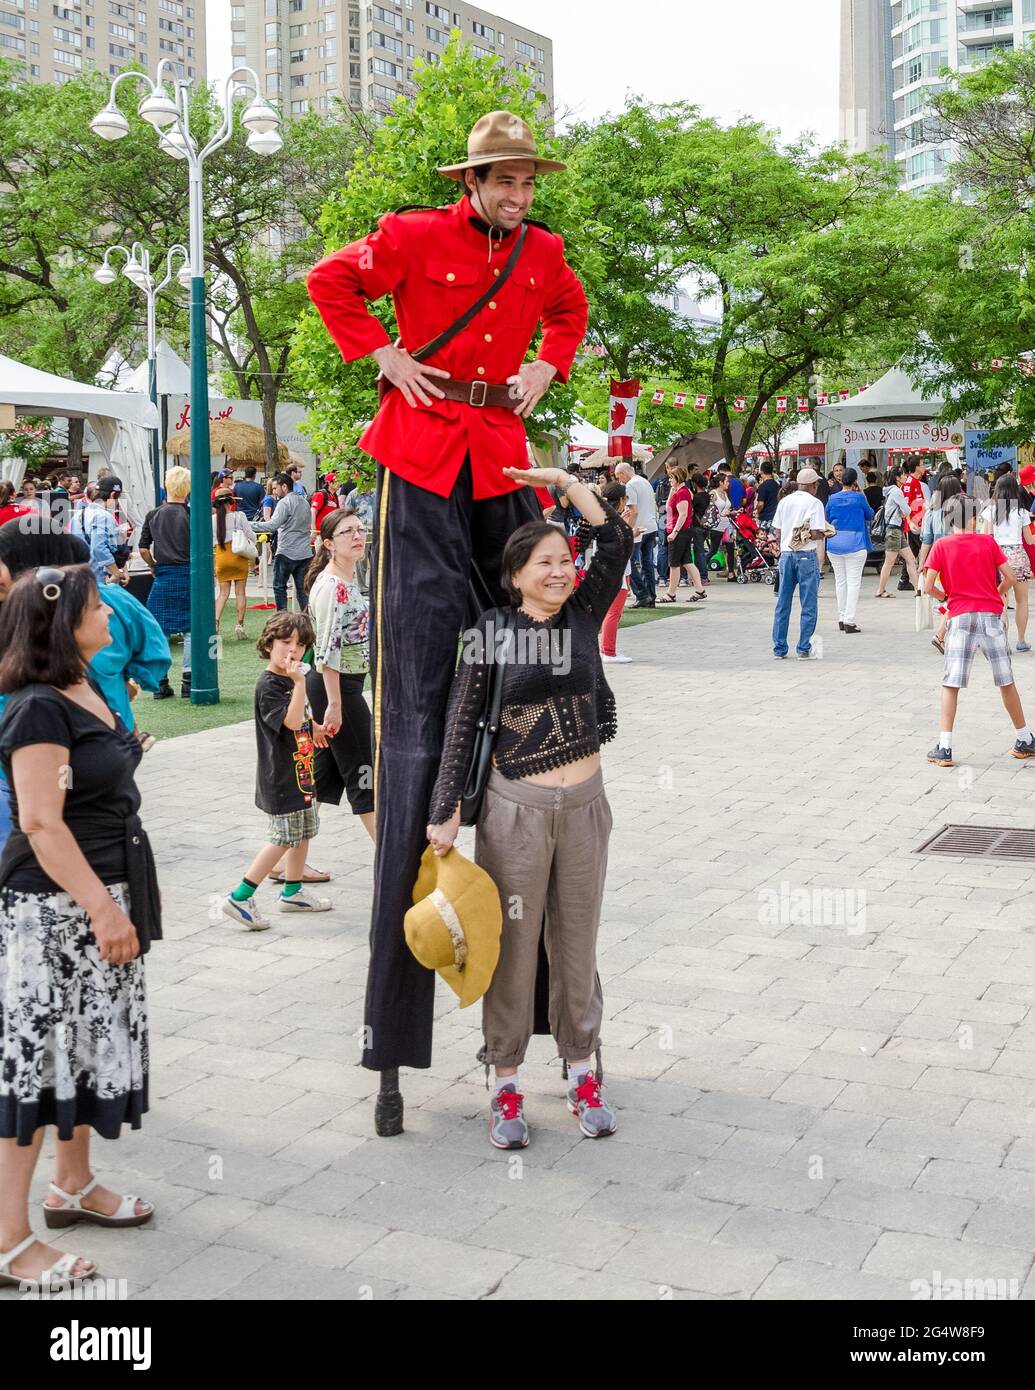 Kanadische mountie auf einem Canada Day Urlaub auf Stelzen posiert mit einer lächelnden Frau für Touristenfotos. Stockfoto